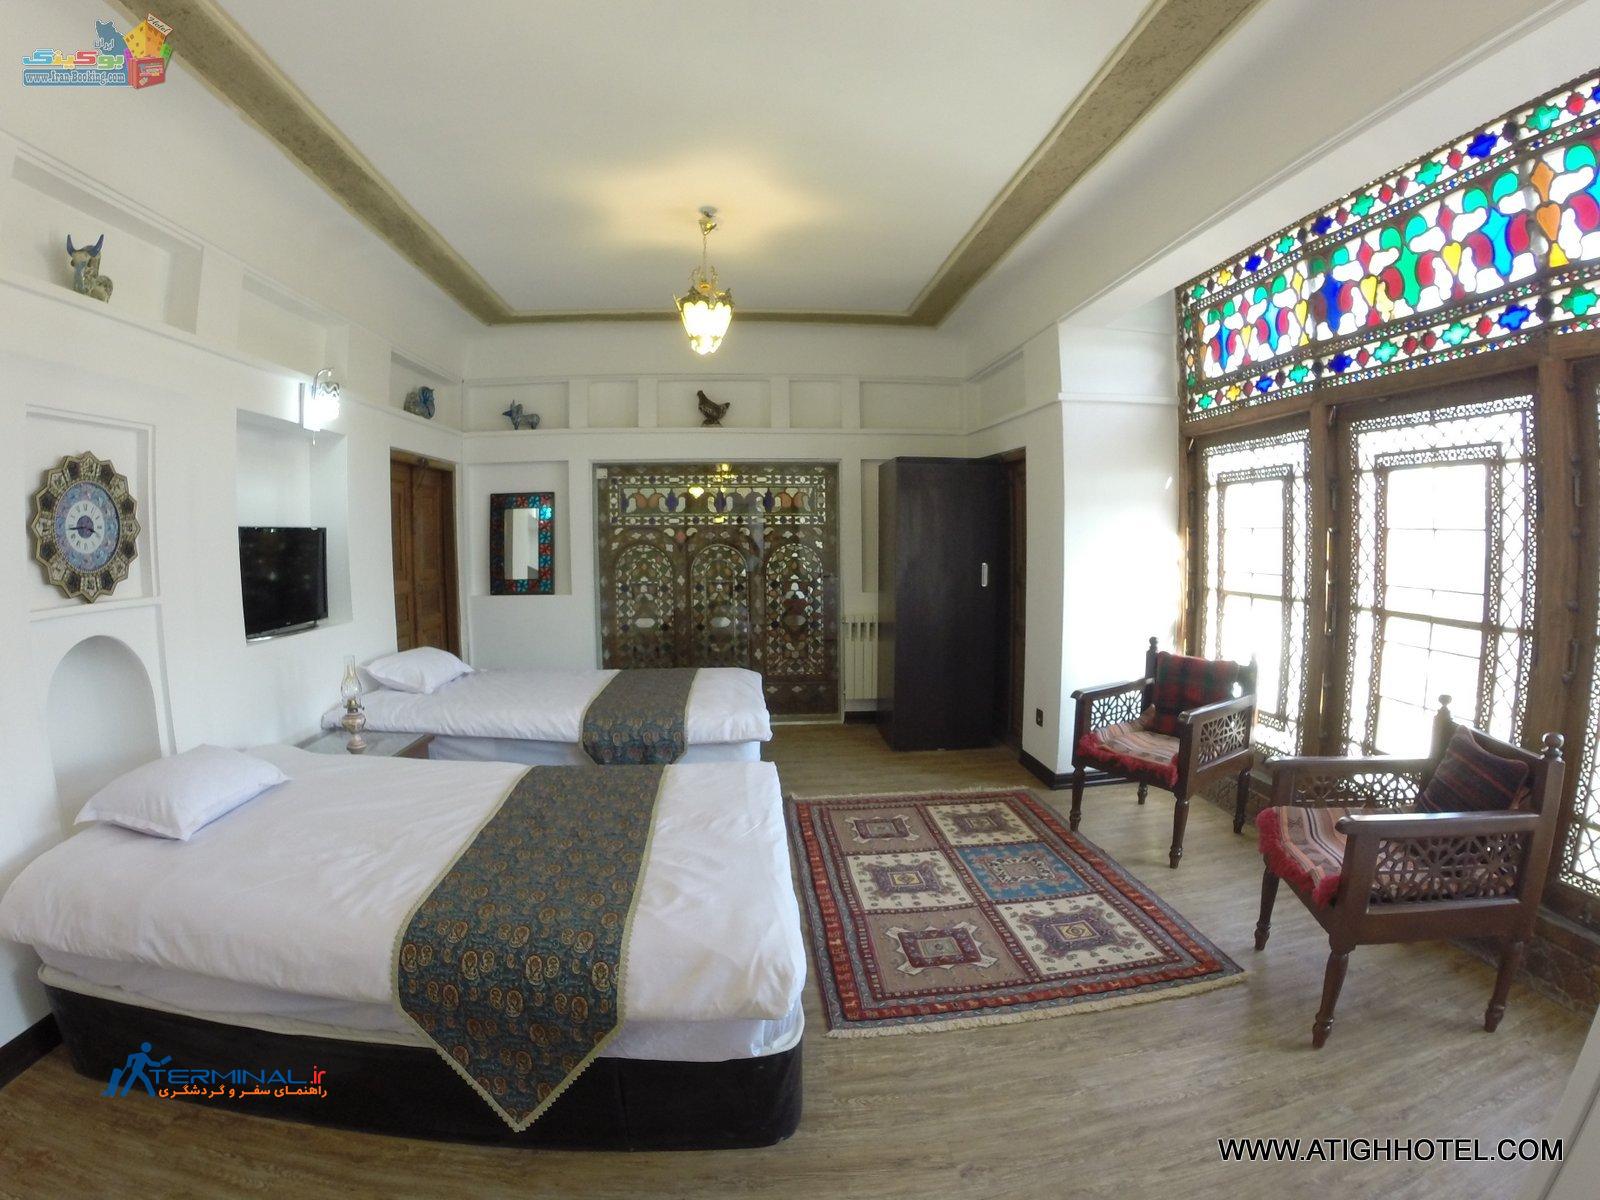 atigh-hotel-isfahan-room-twin.jpg (1600×1200)